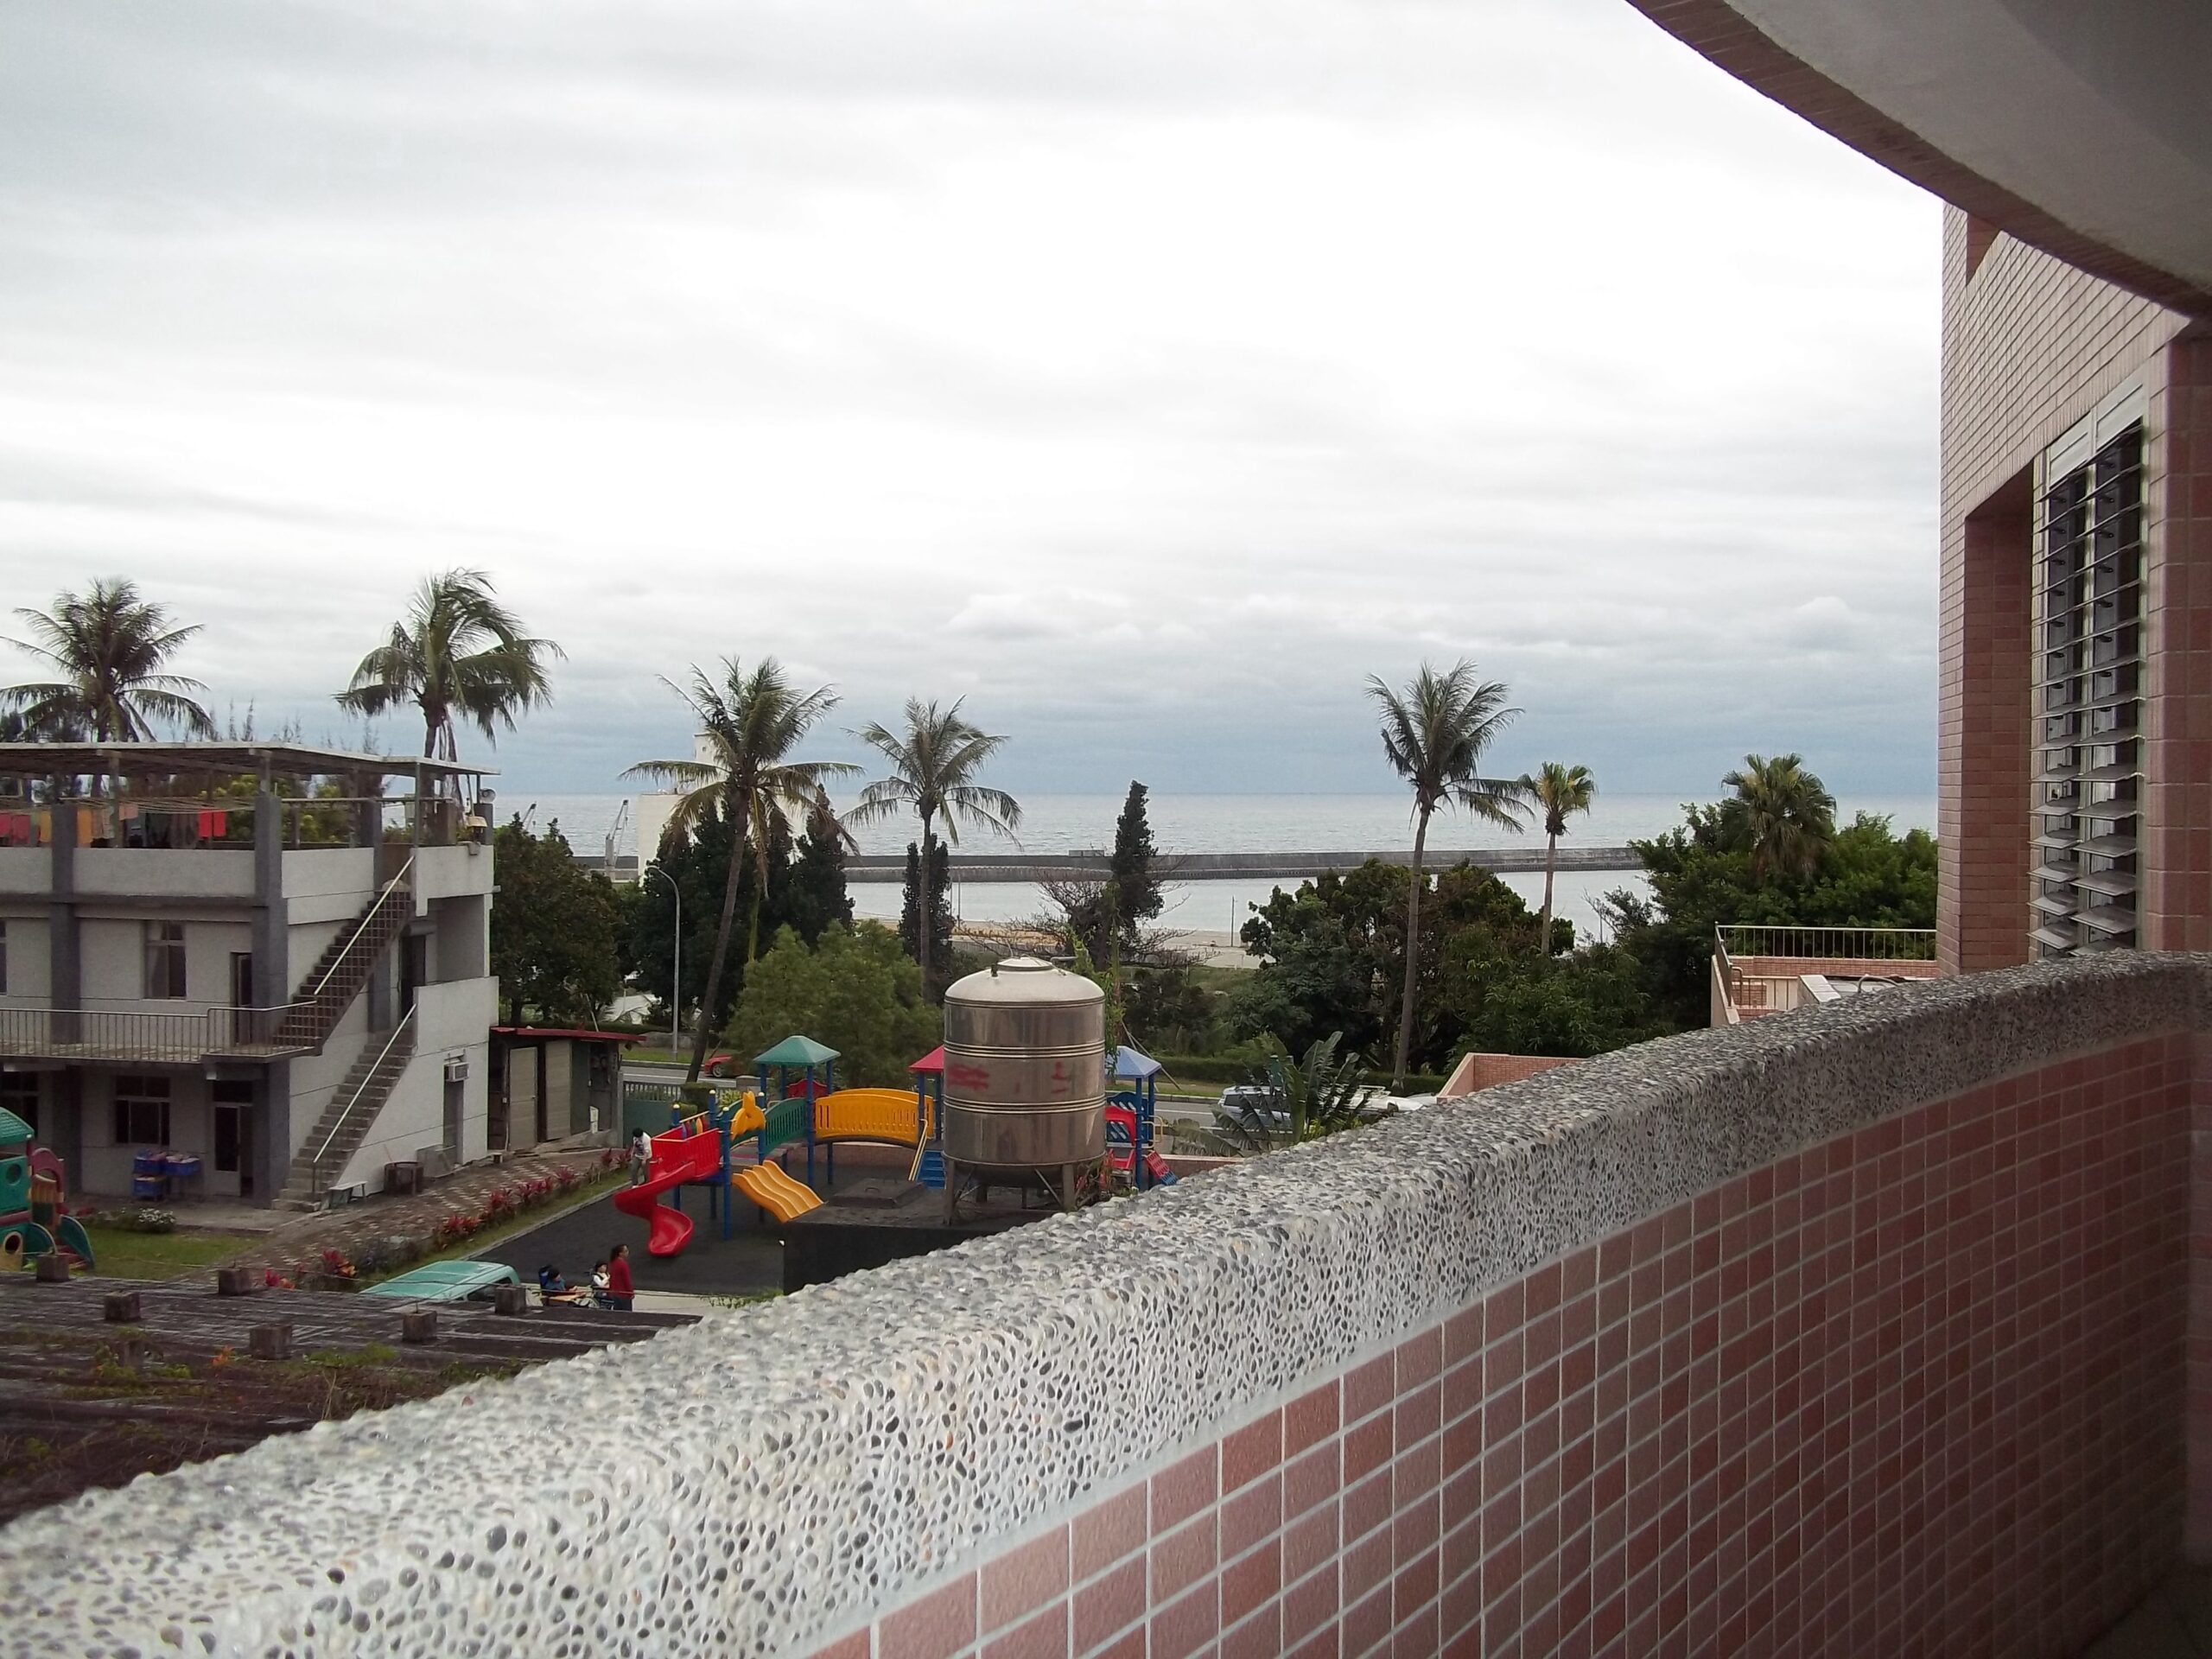 Aussicht von einem Balkon Bethesdas auf das Meer, den Spielplatz und das Waschhaus.